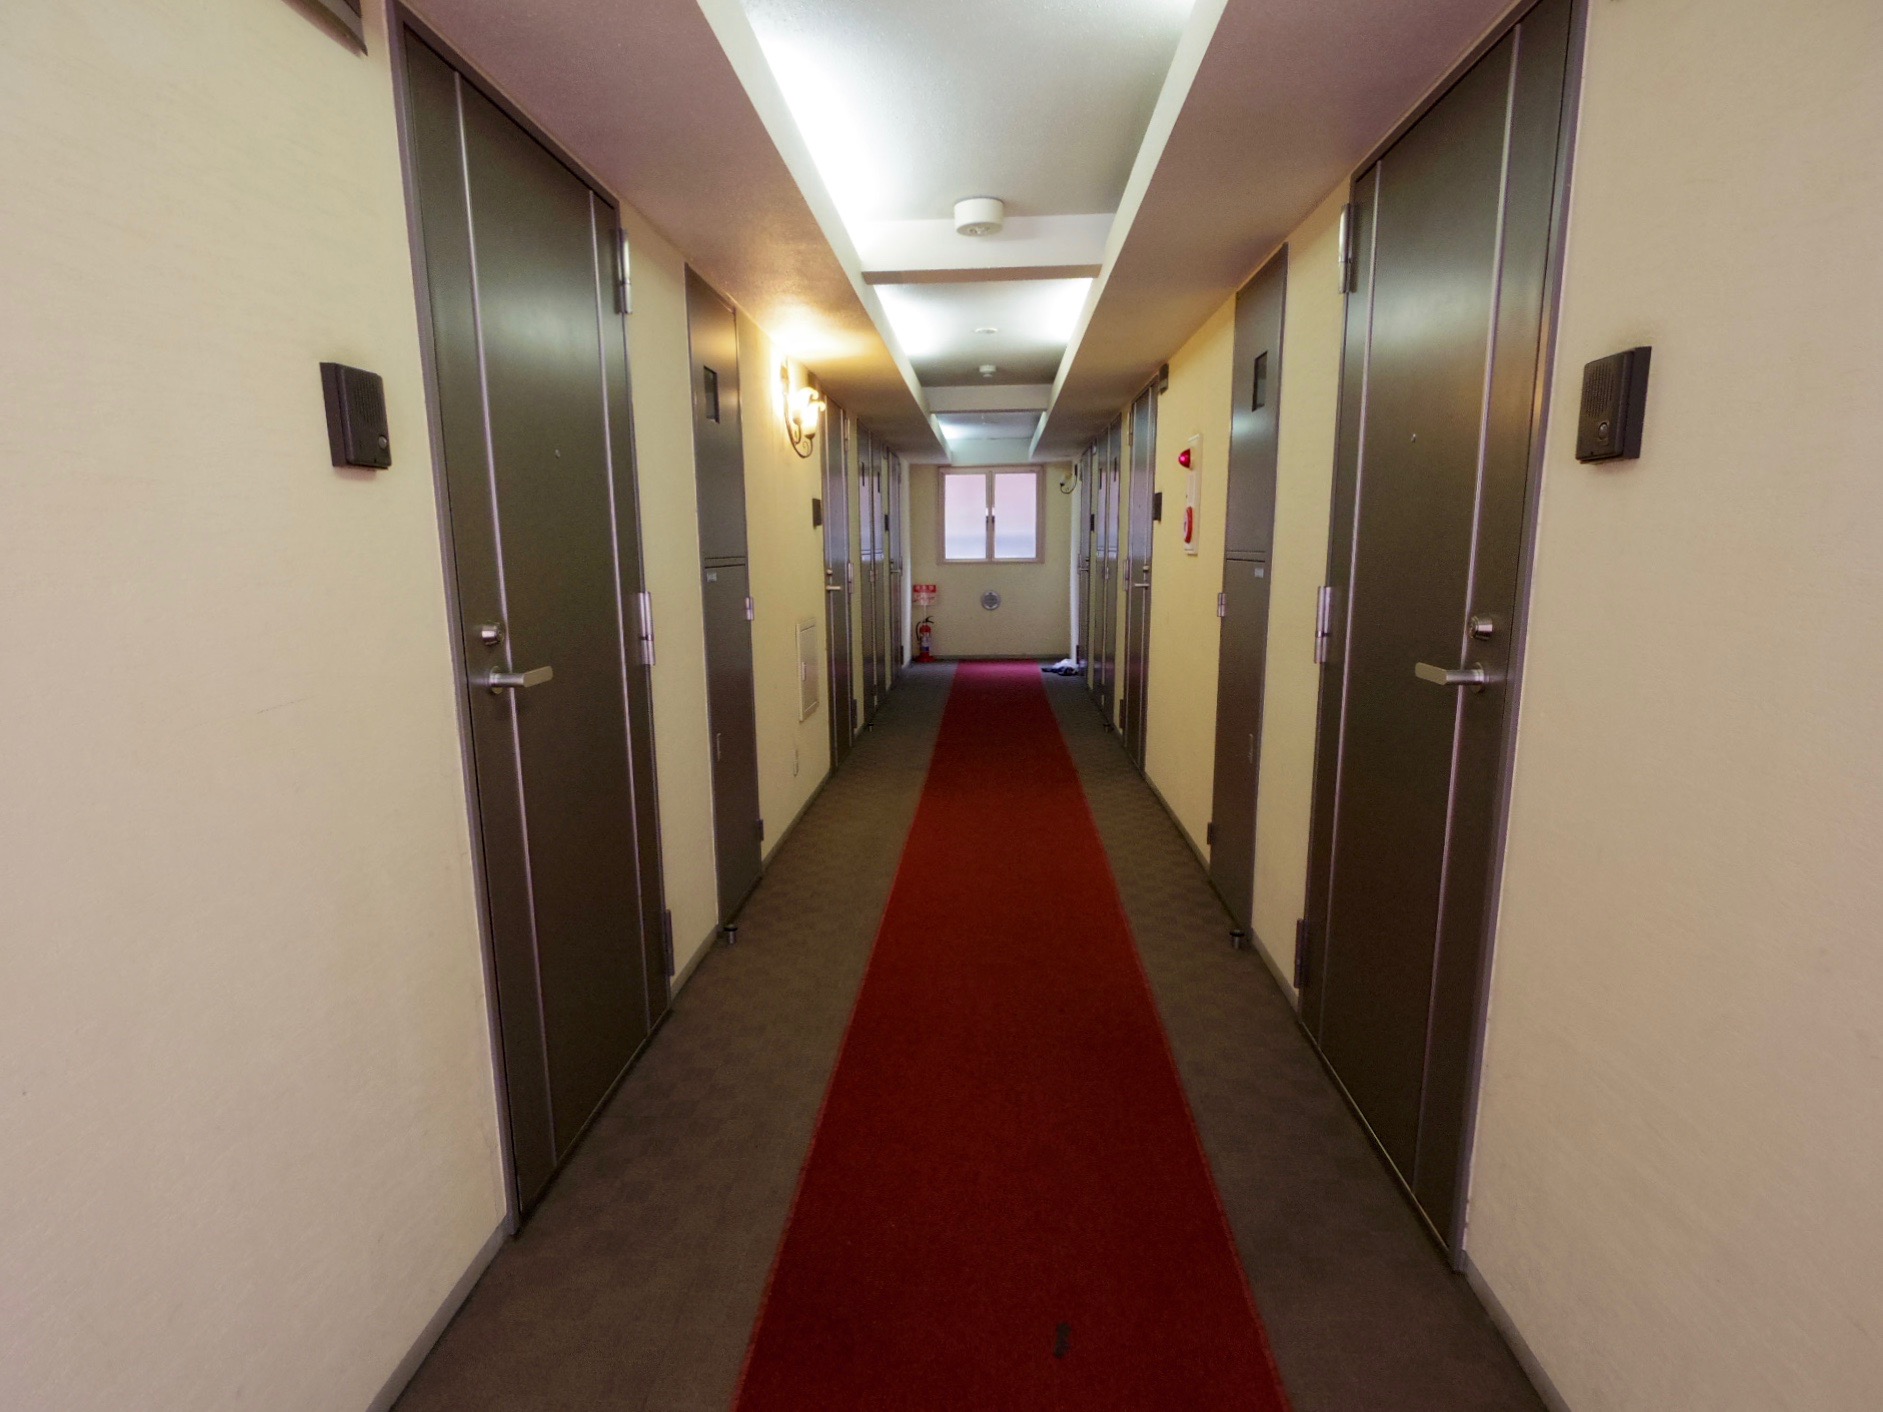 ホテルのような絨毯が敷かれた内廊下。